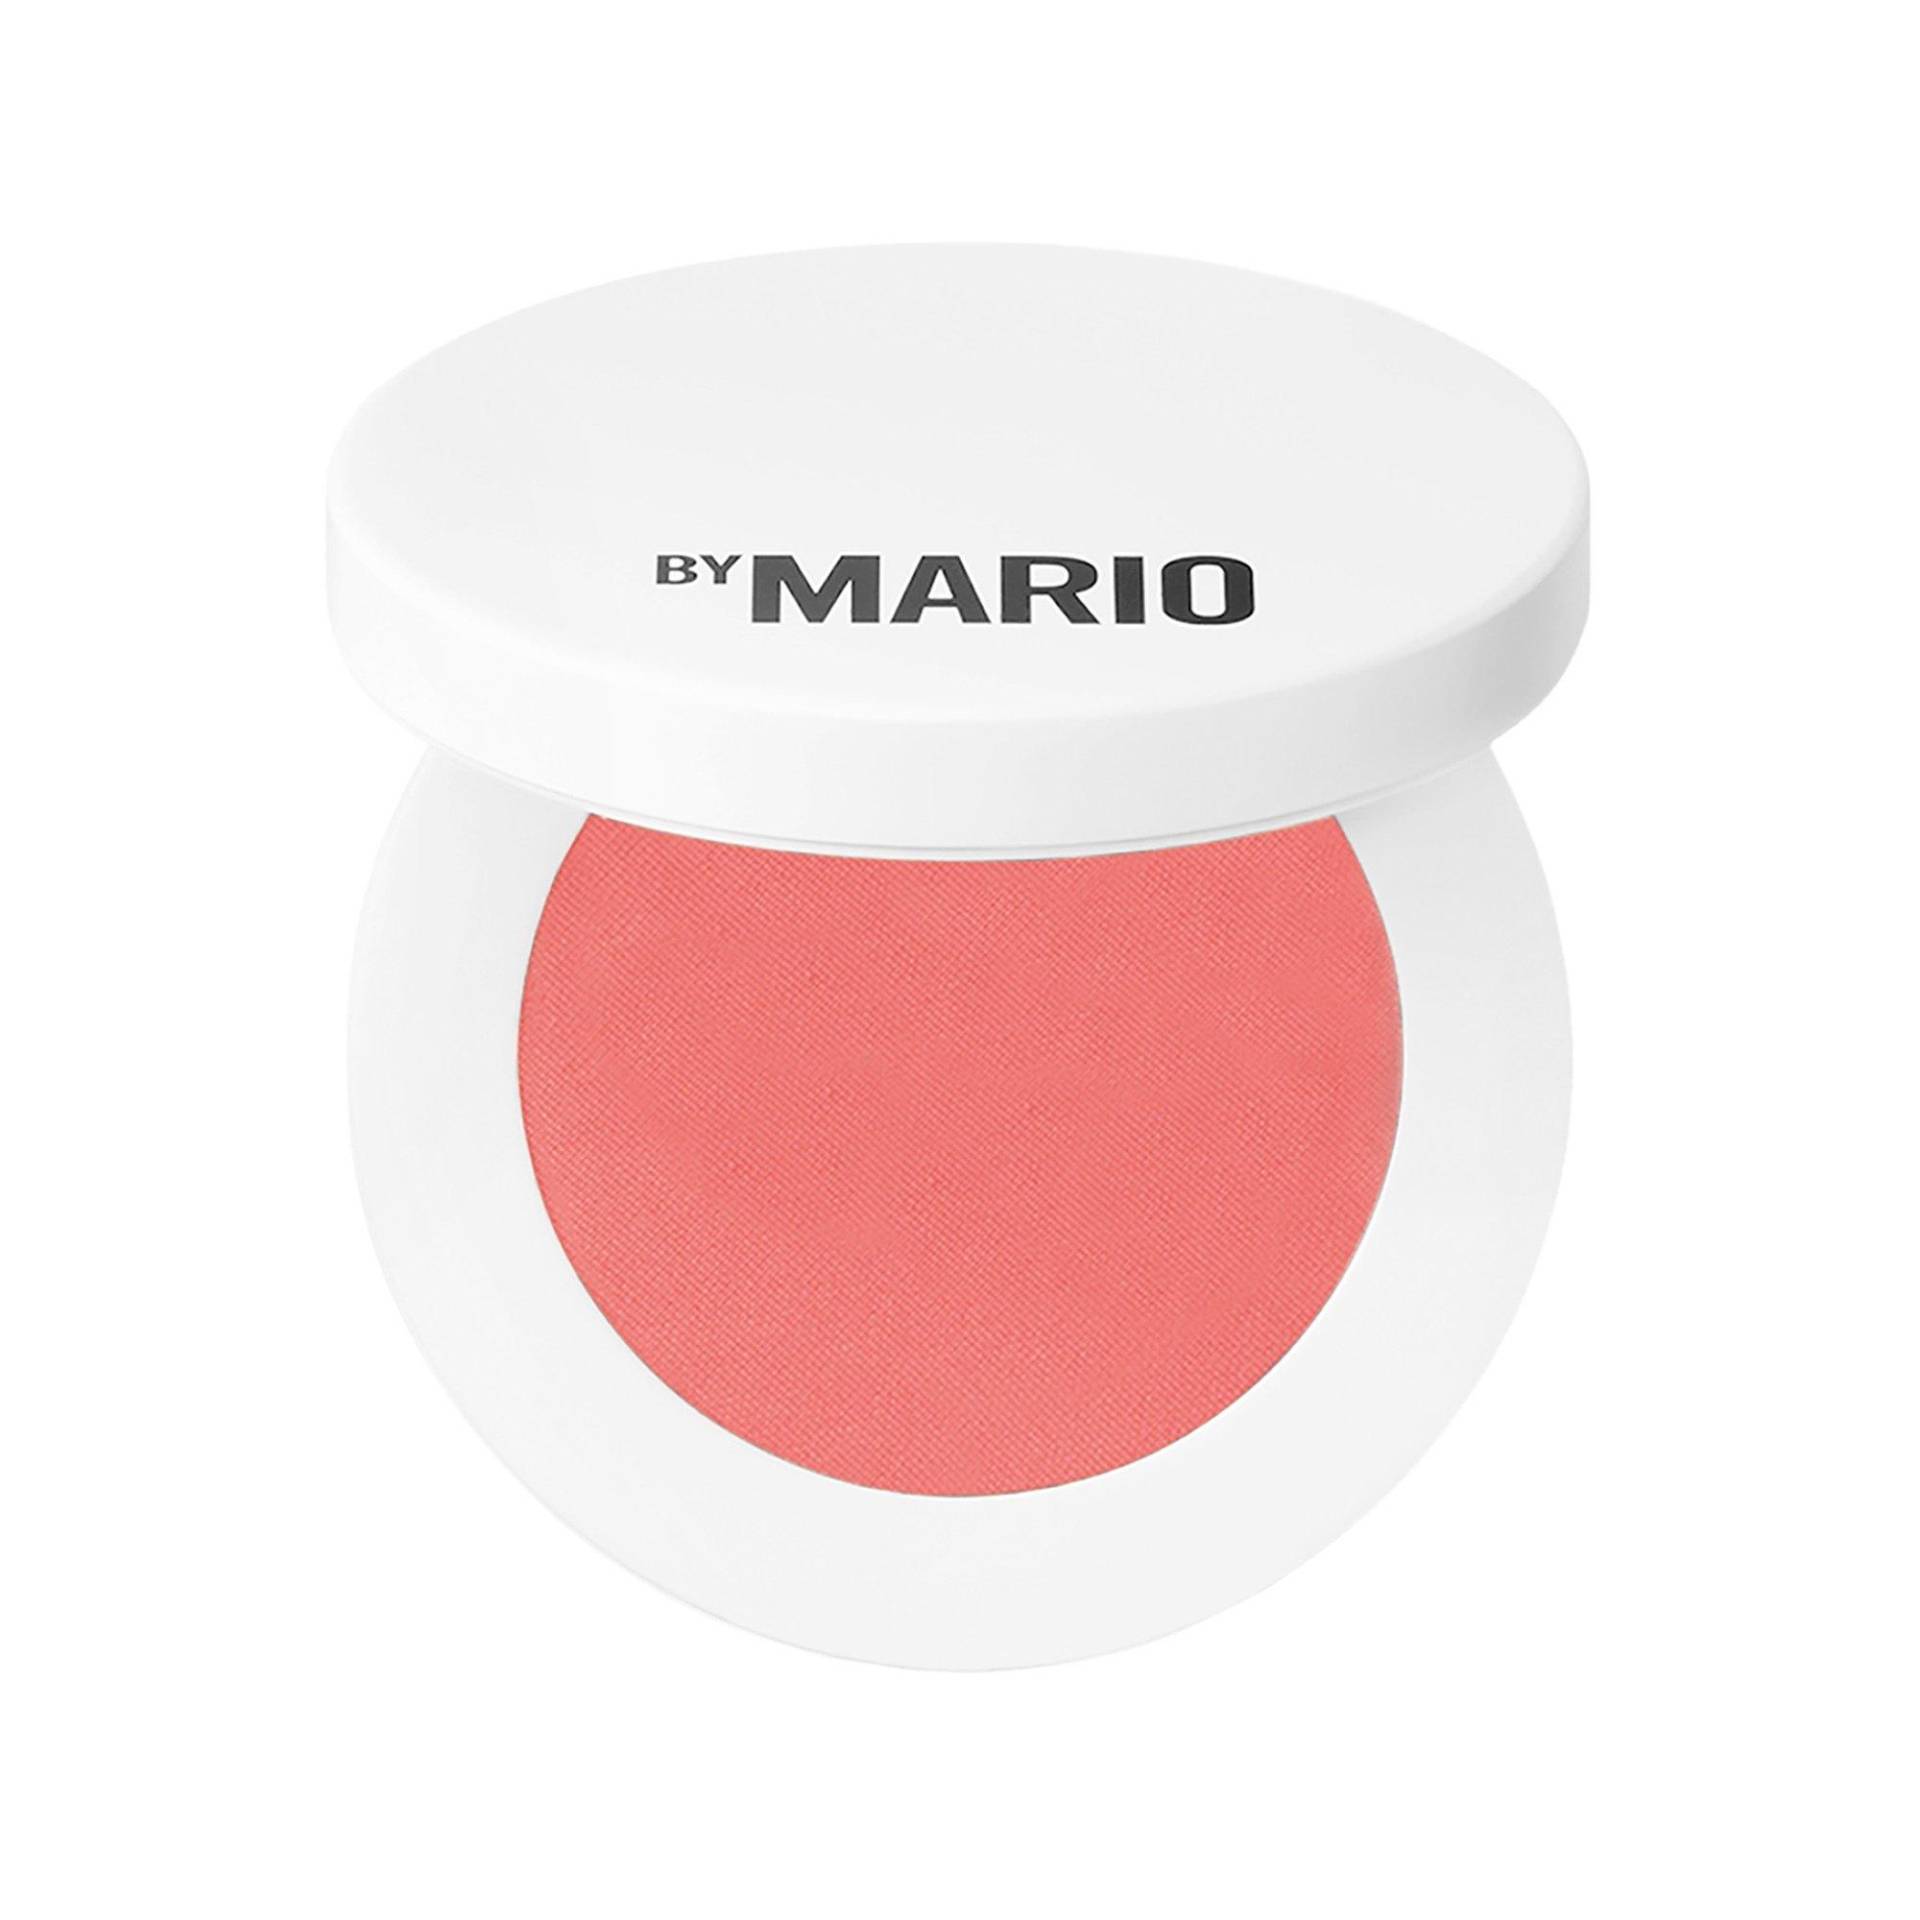 Soft Pop Powder Blush - Puderrouge Damen Creamy Peach 4.4g von MAKEUP BY MARIO